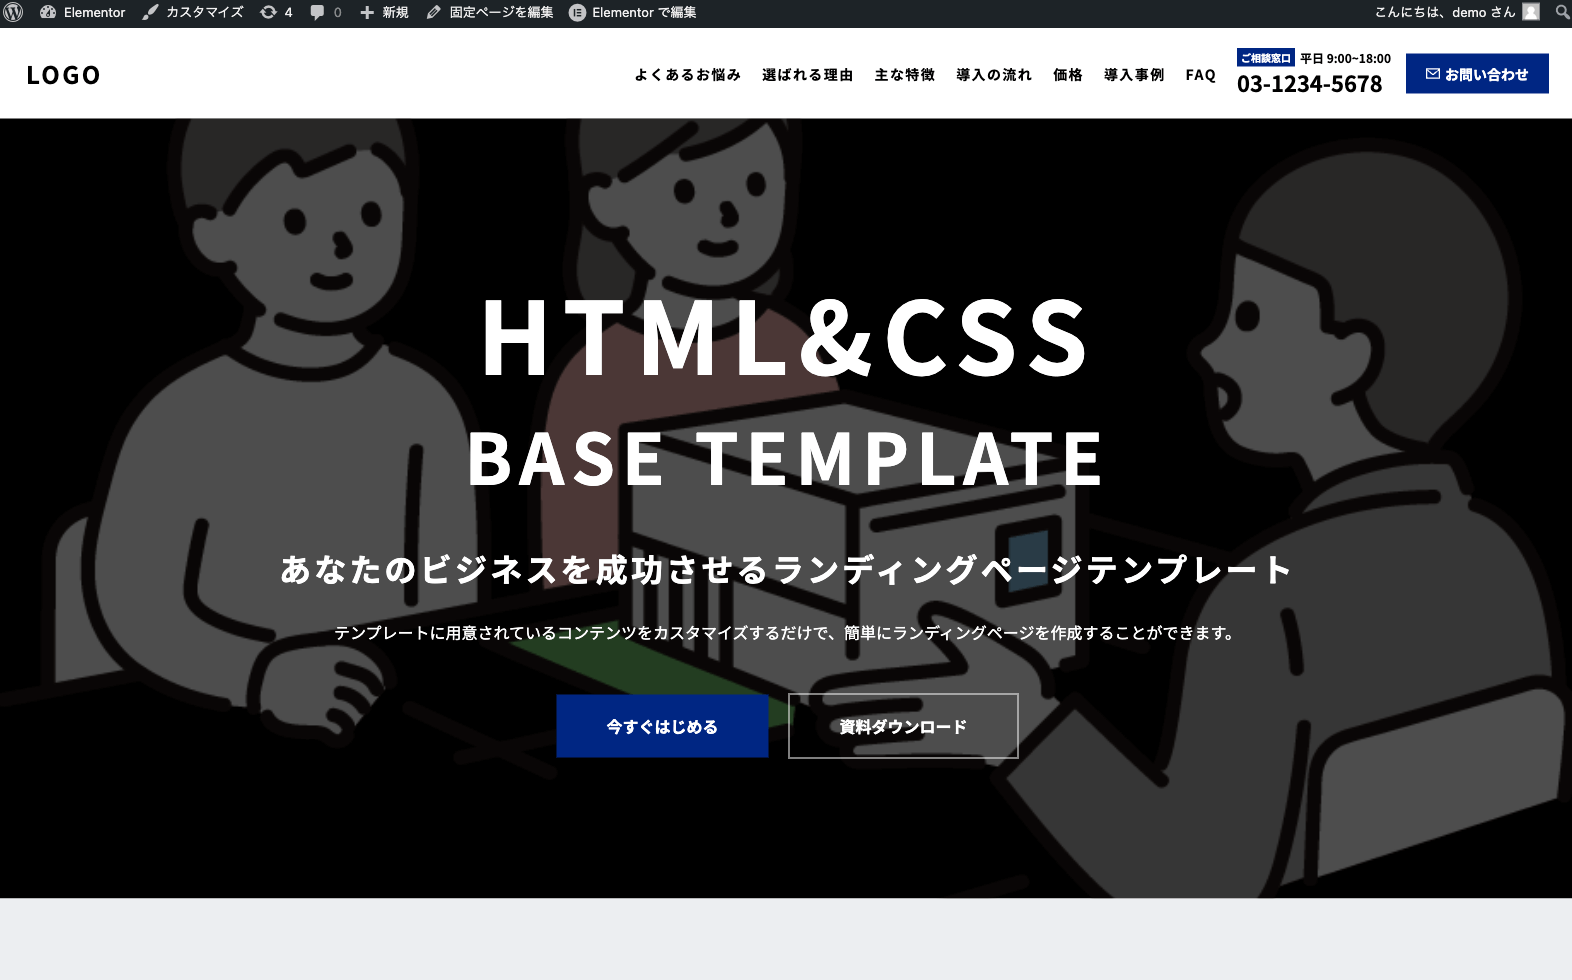 HTMLのLPテンプレートをElementor化する基本ステップ ページの表示